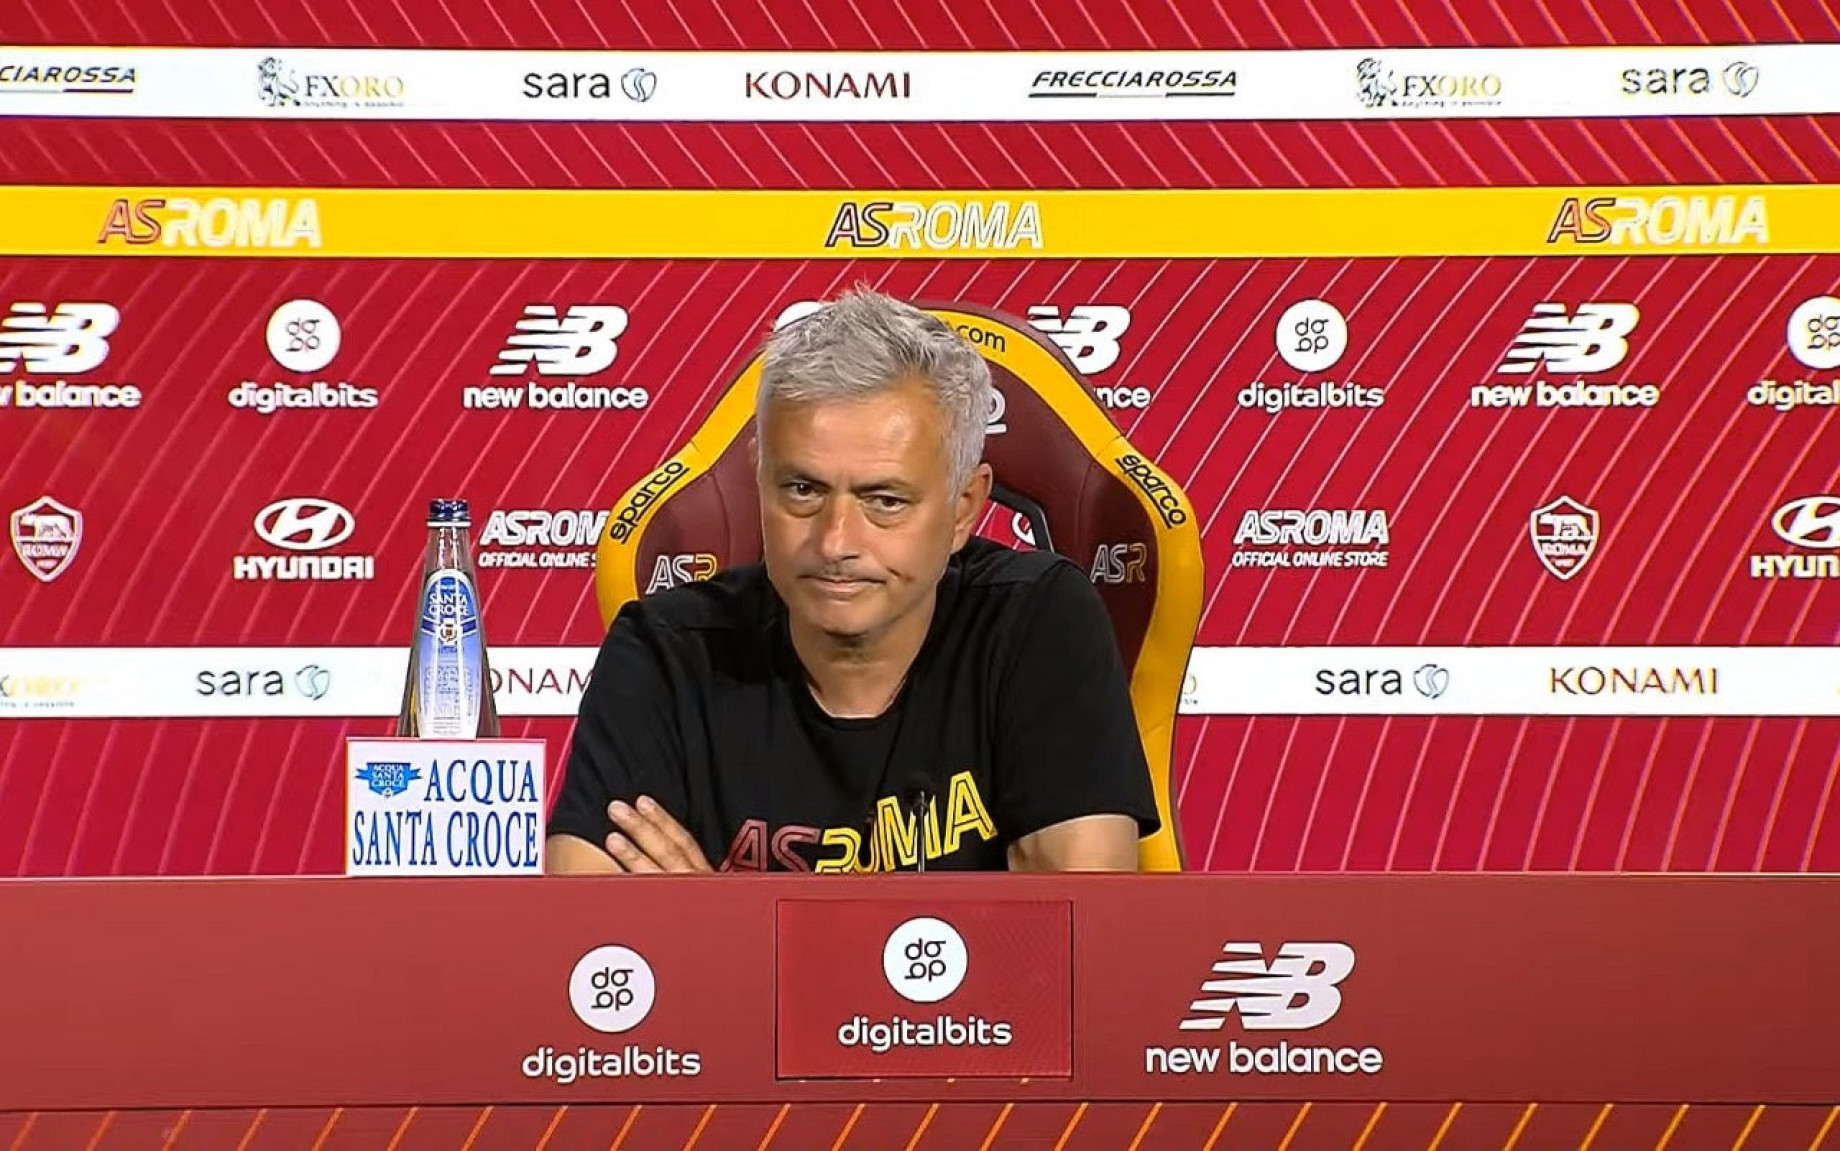 mourinho-roma-conferenza-stampa-maggio-screen.jpg